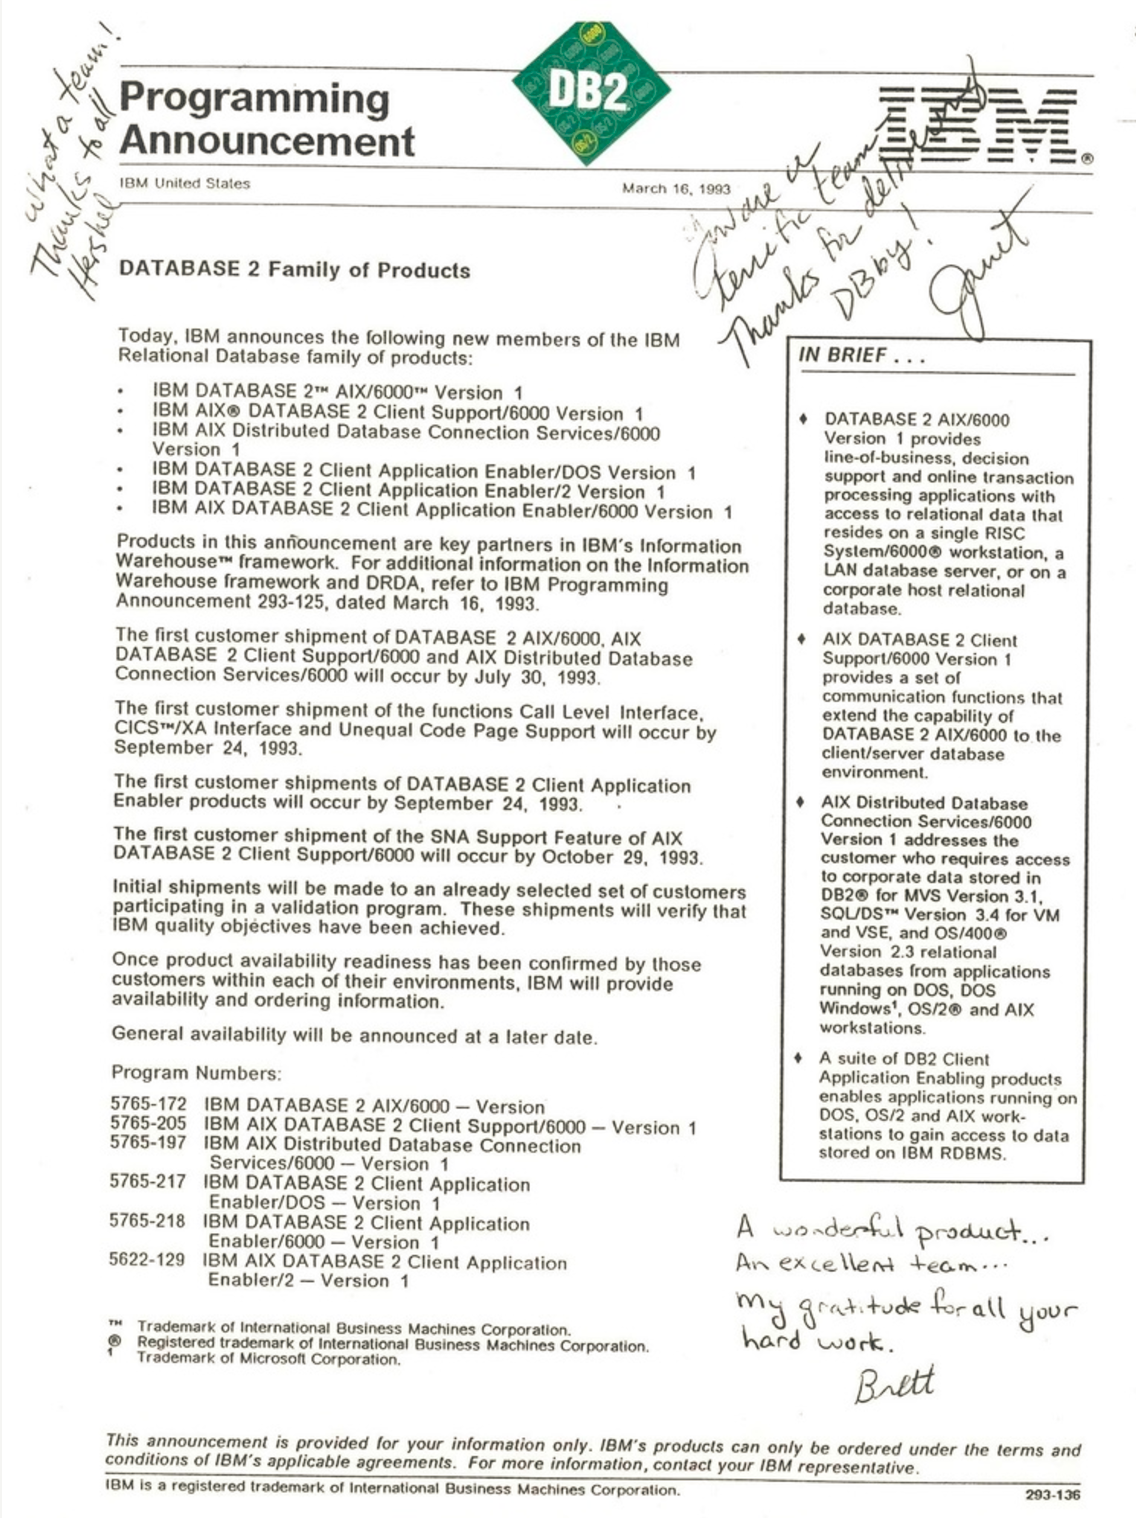 上記の資料は、1993 年 3 月 16 日付けの最初の製品発表レターです。IBM ビジネス・リーダー Janet Perna、Hershel Harris、Brett MacIntry による署名とメッセージが記されています。